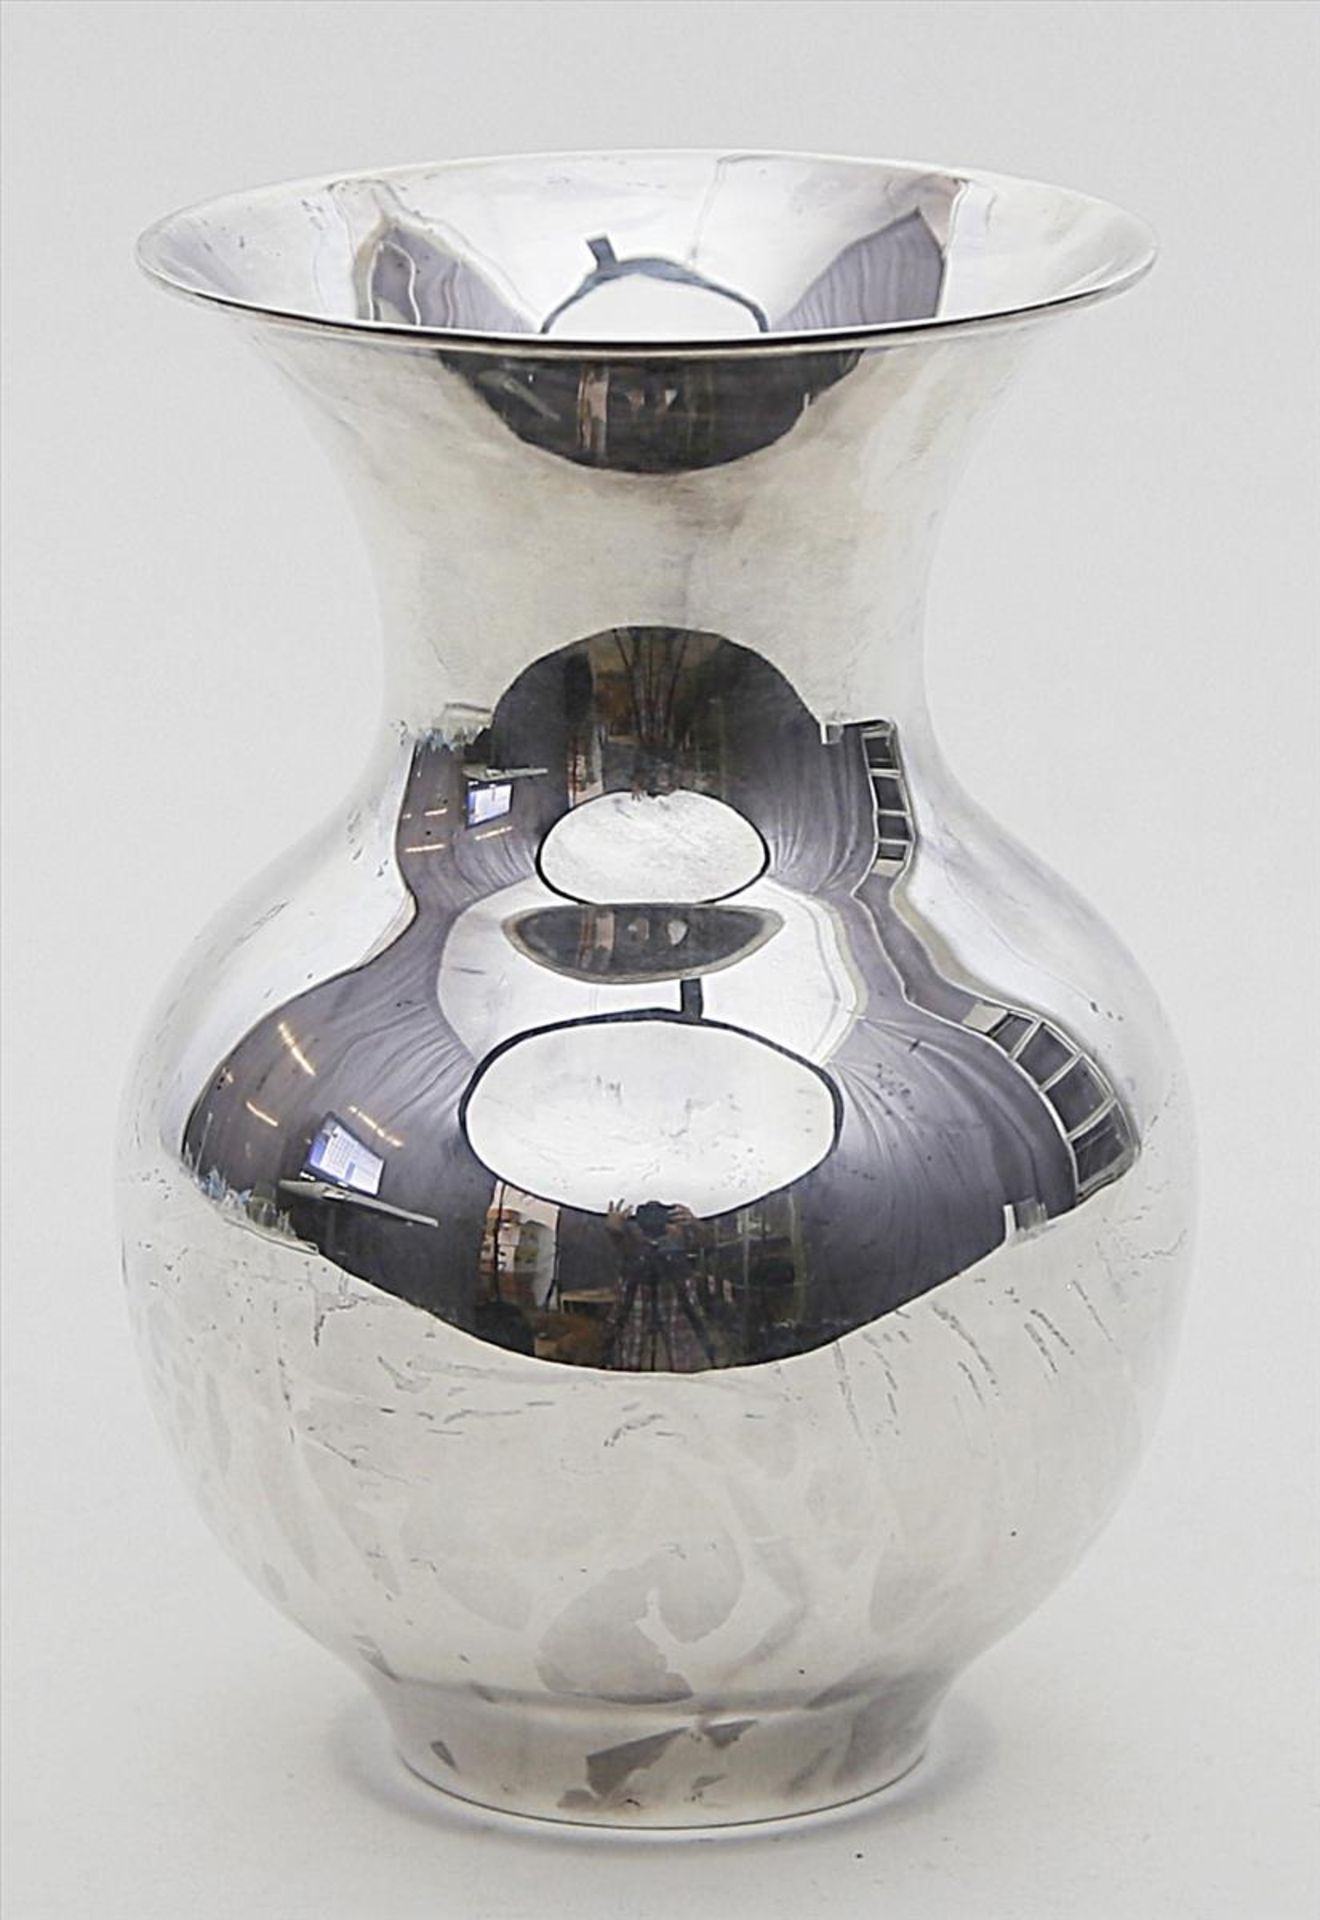 Vase.835/000 Silber, 308 g. Glatte Wandung. Mz. Gebrüder Kühn, Schwäbisch Gmünd (gegründet 1860). H.